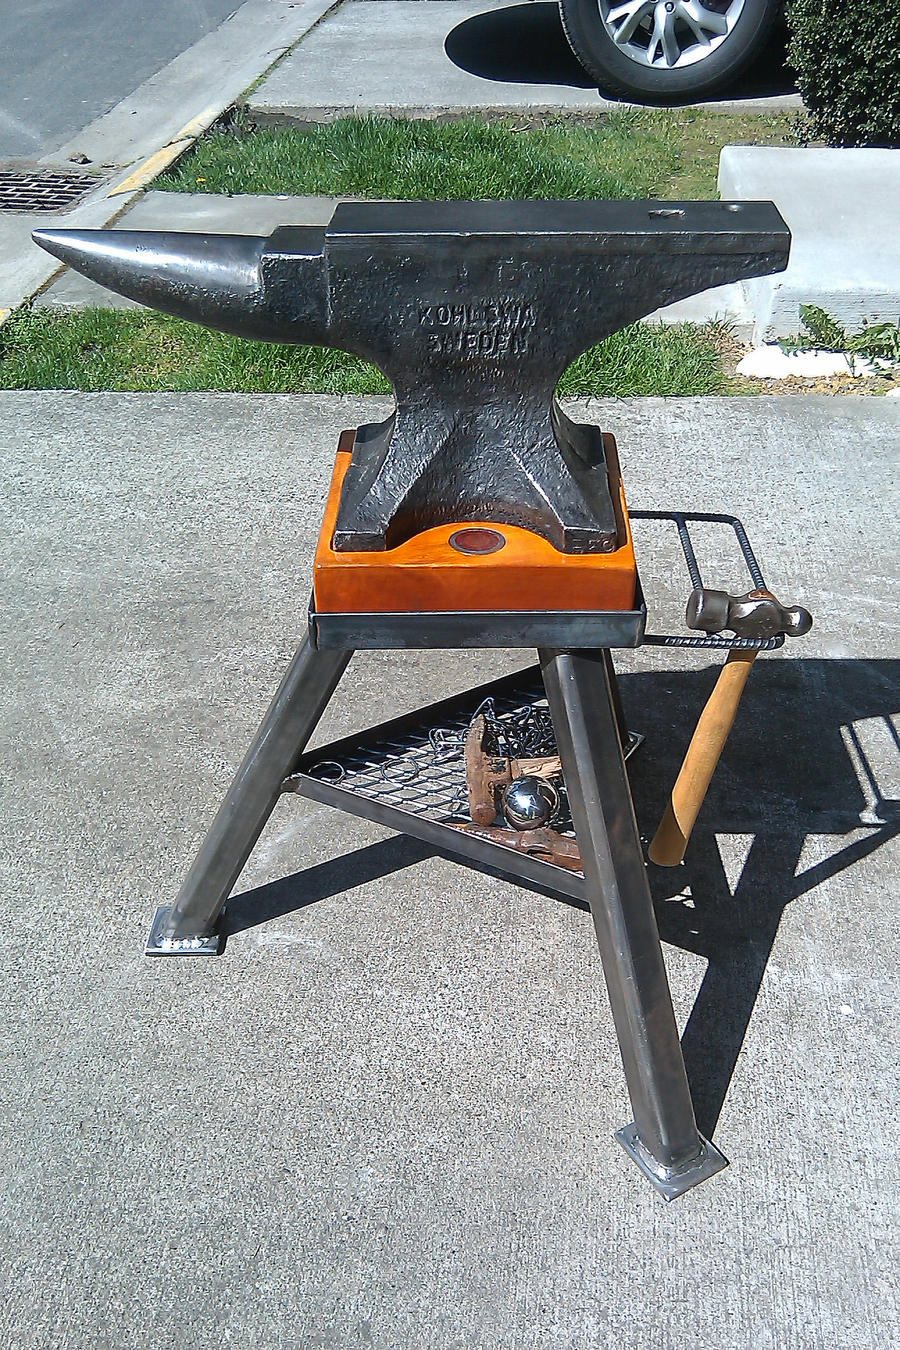 Blacksmith ANVIL STAND Forging 